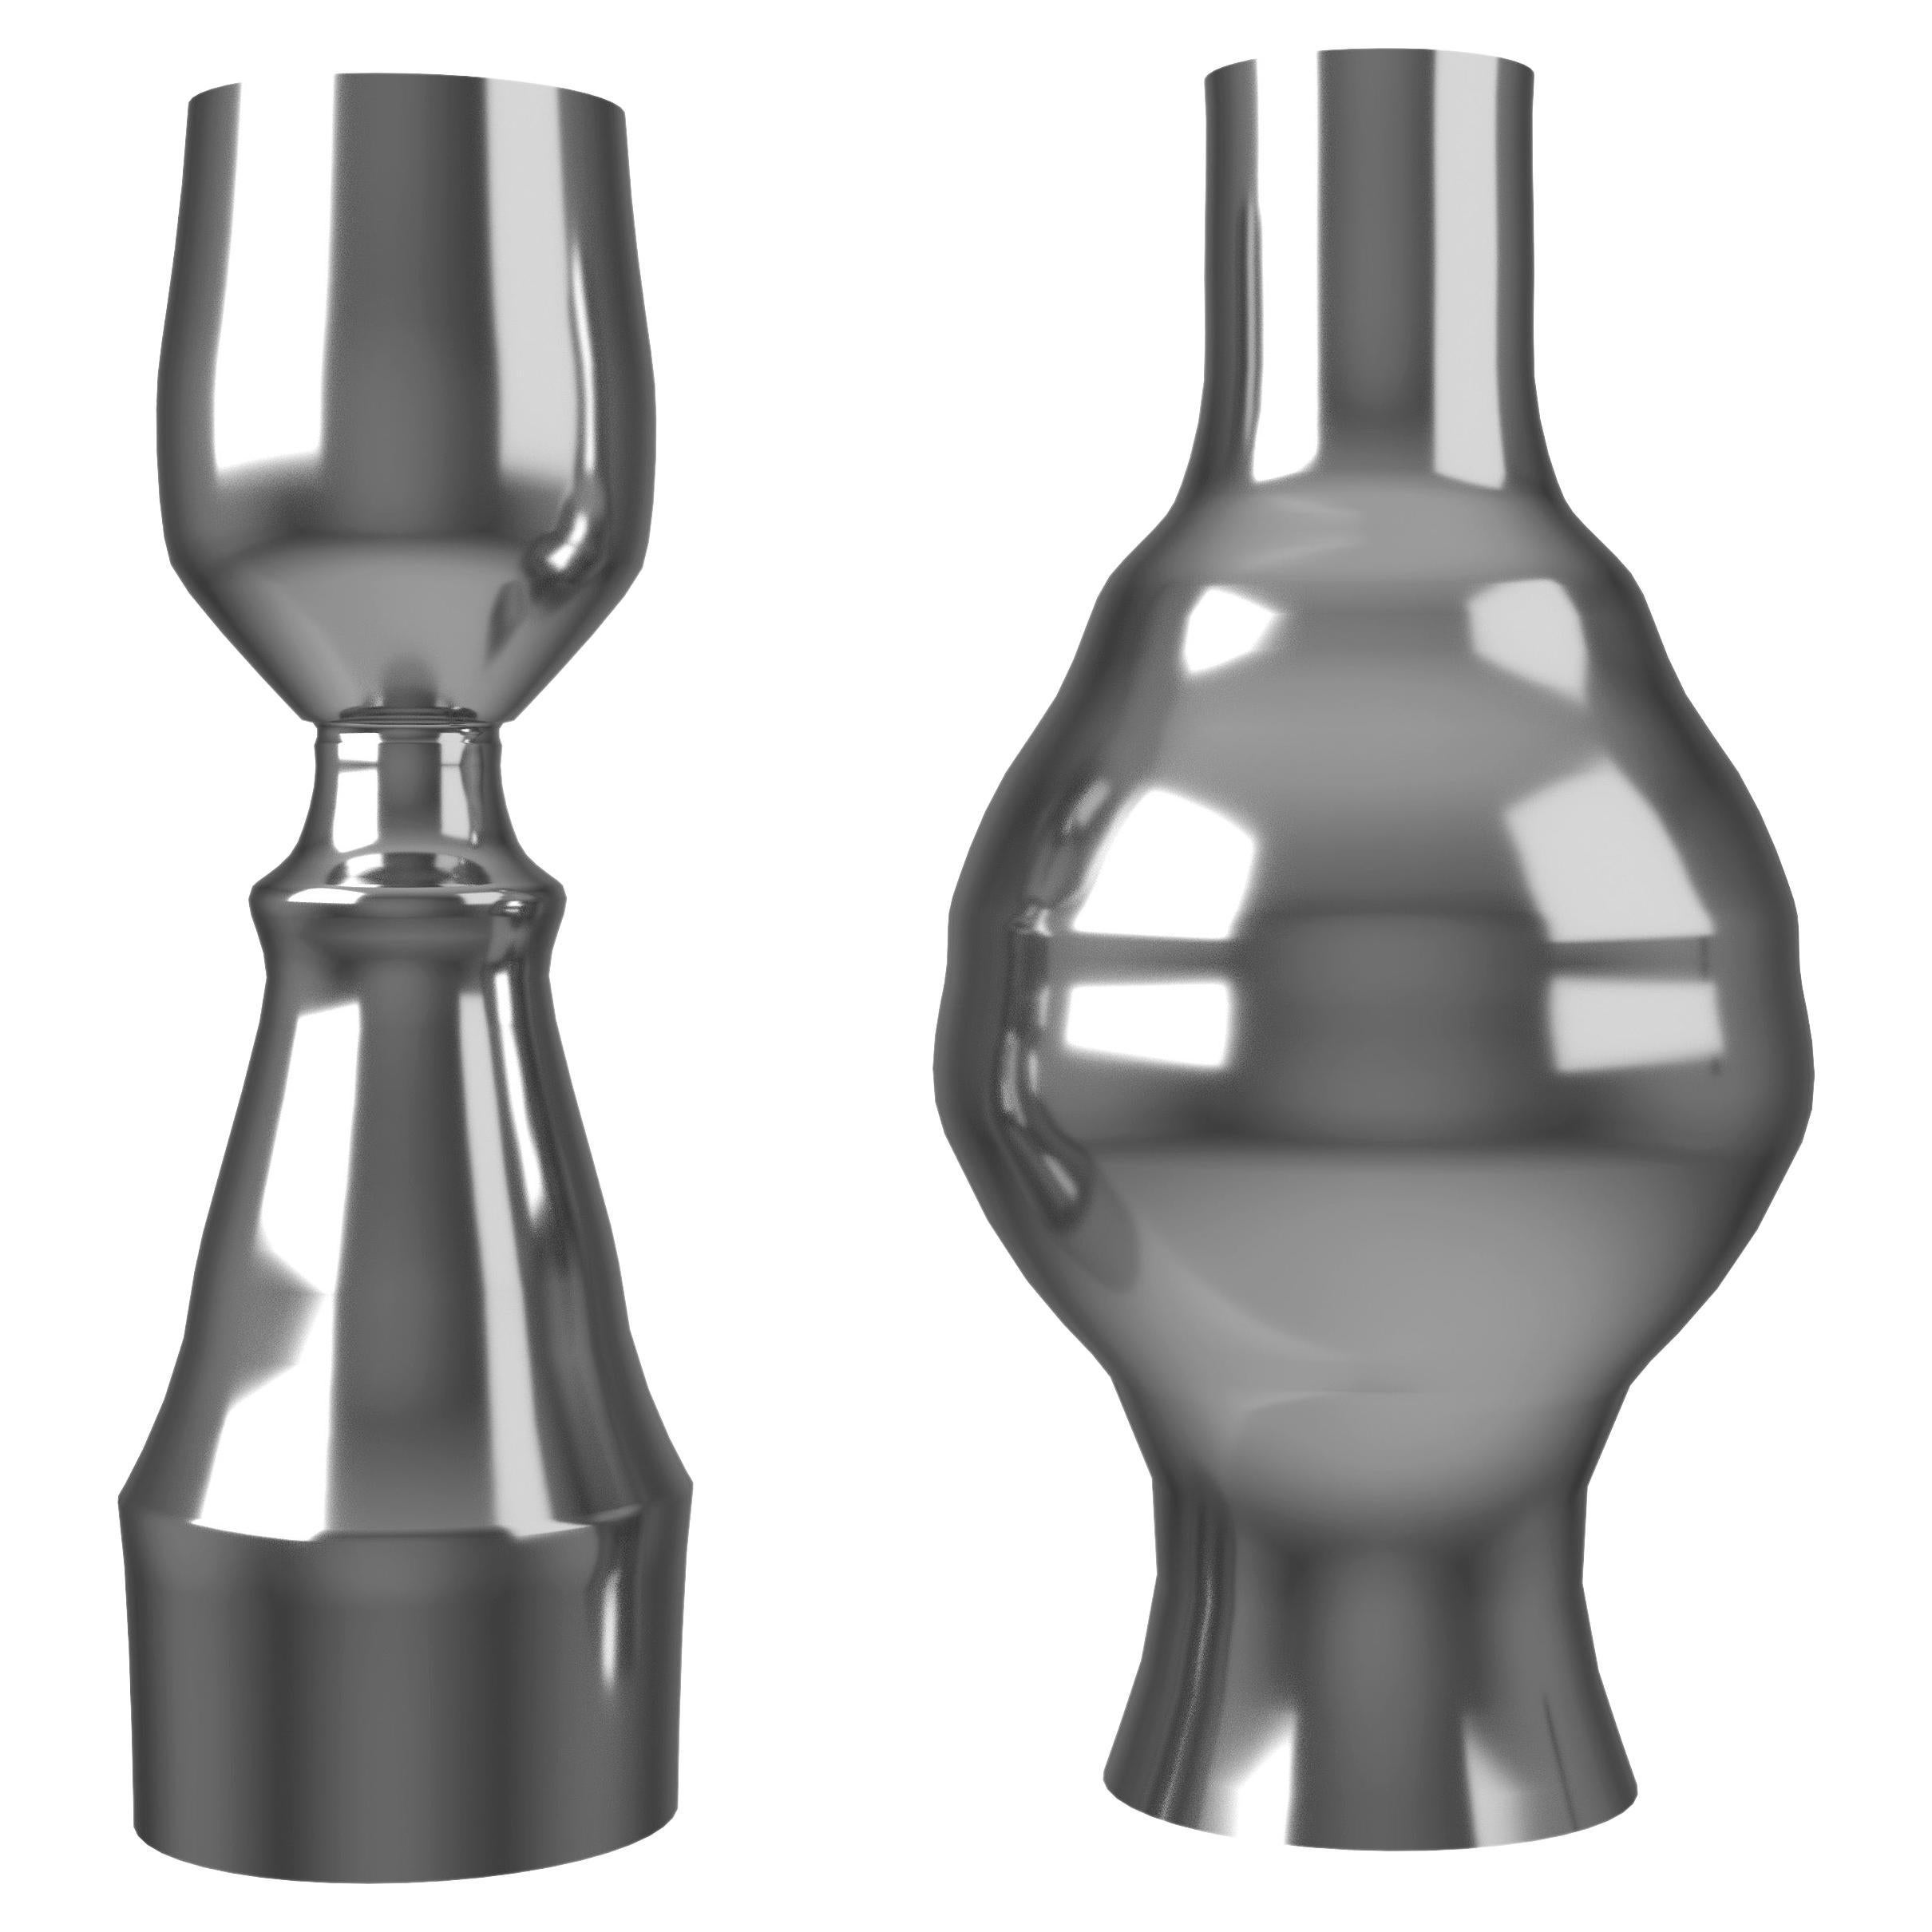  Inamorata Paar Vasen aus poliertem Aluminium